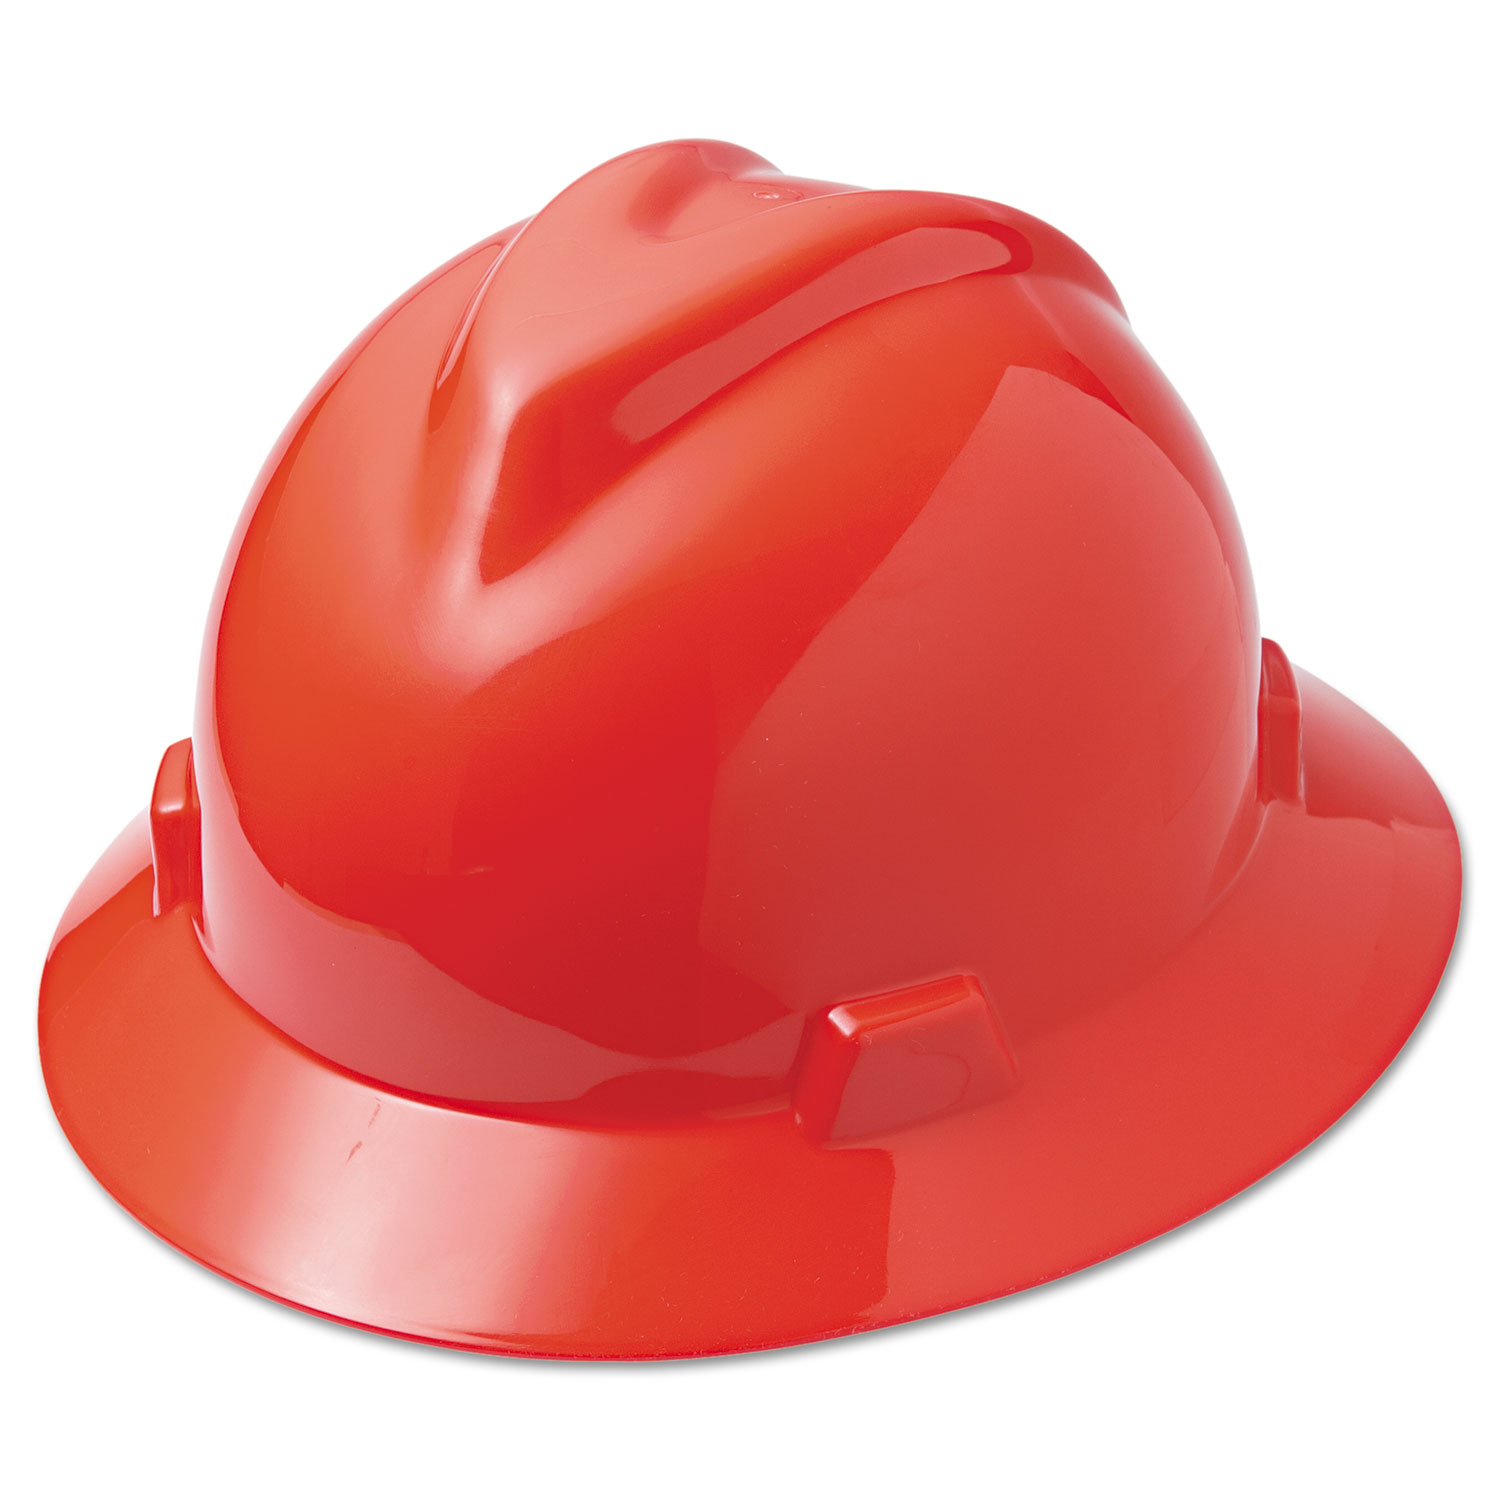 V-Gard Full-Brim Hard Hats, Ratchet Suspension, Size 6 1/2 - 8, Red